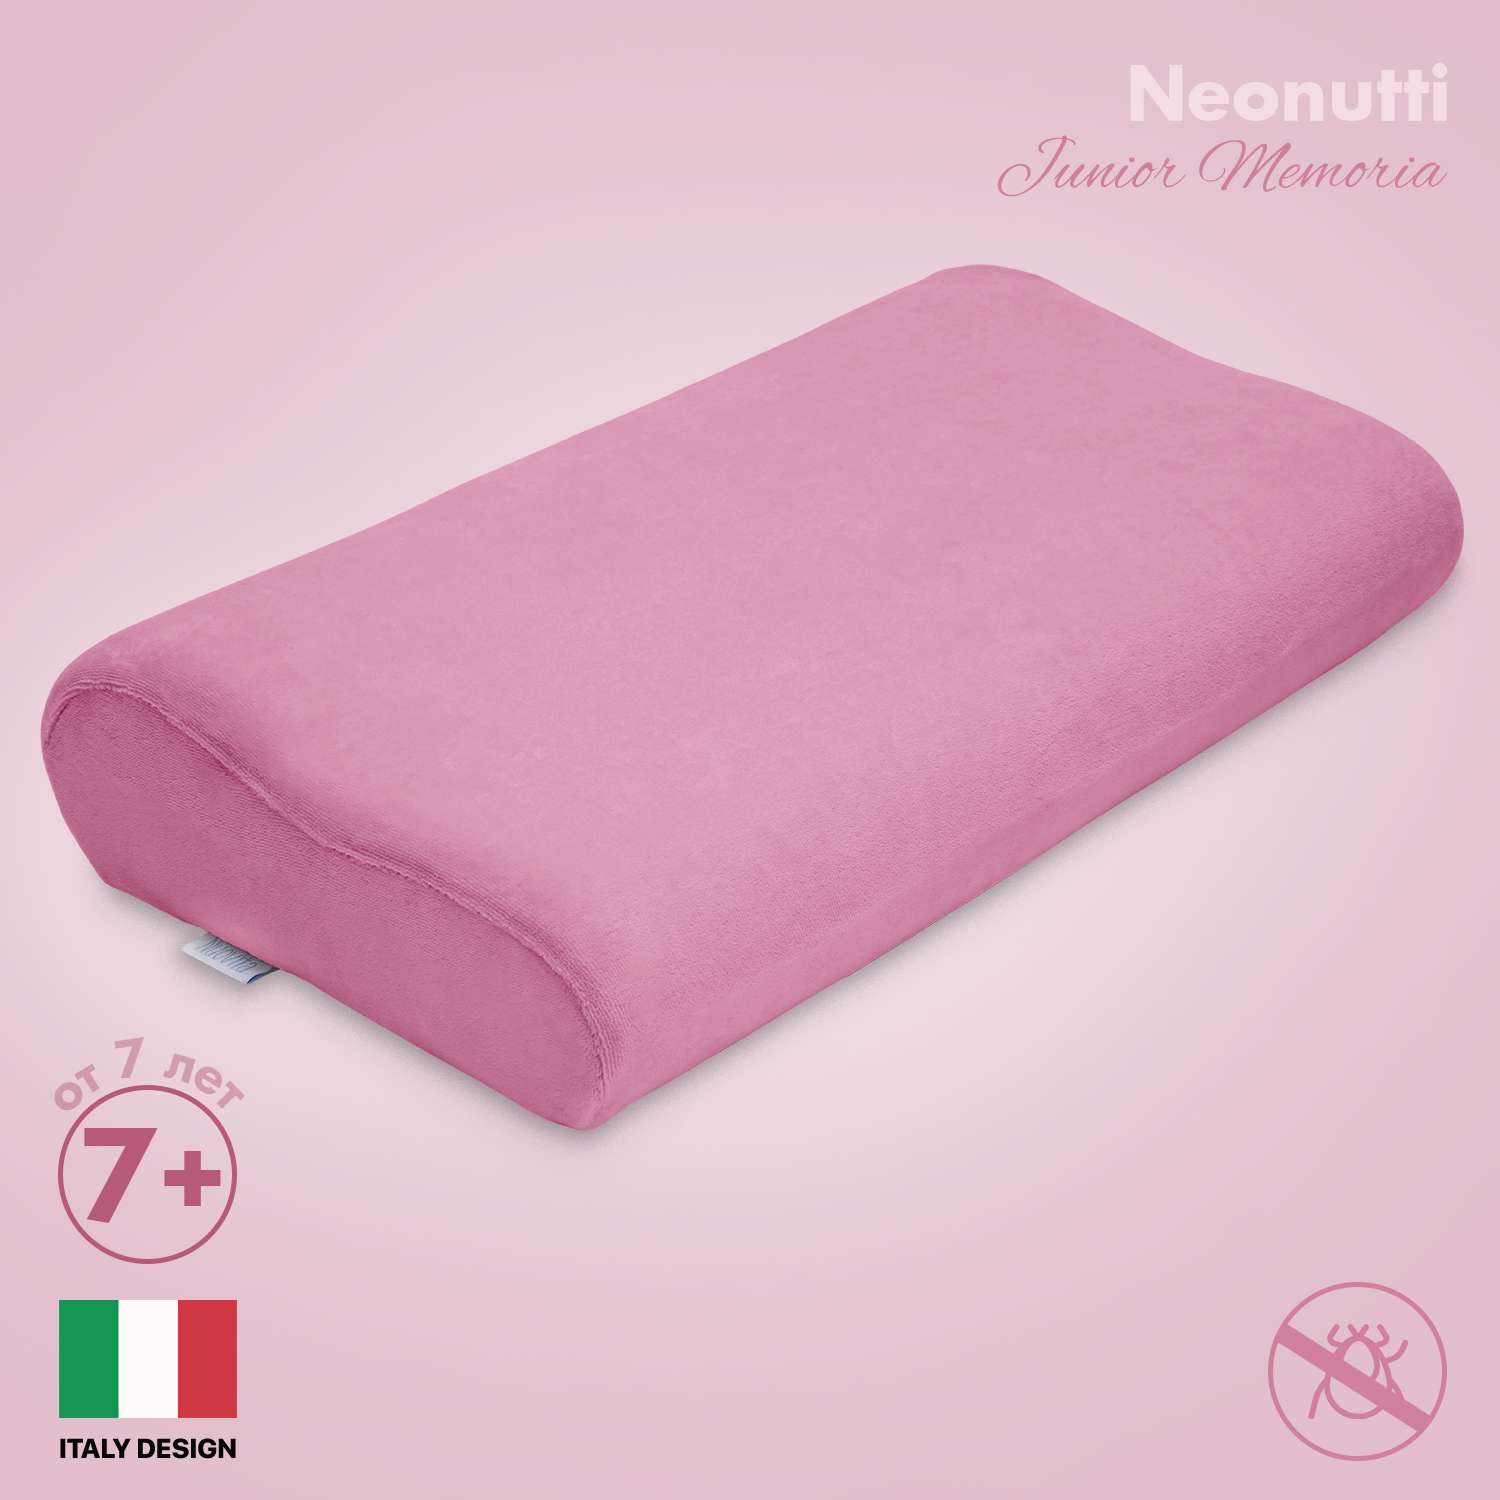 Подушка детская Nuovita Neonutti Junior Memoria Розовая - фото 2